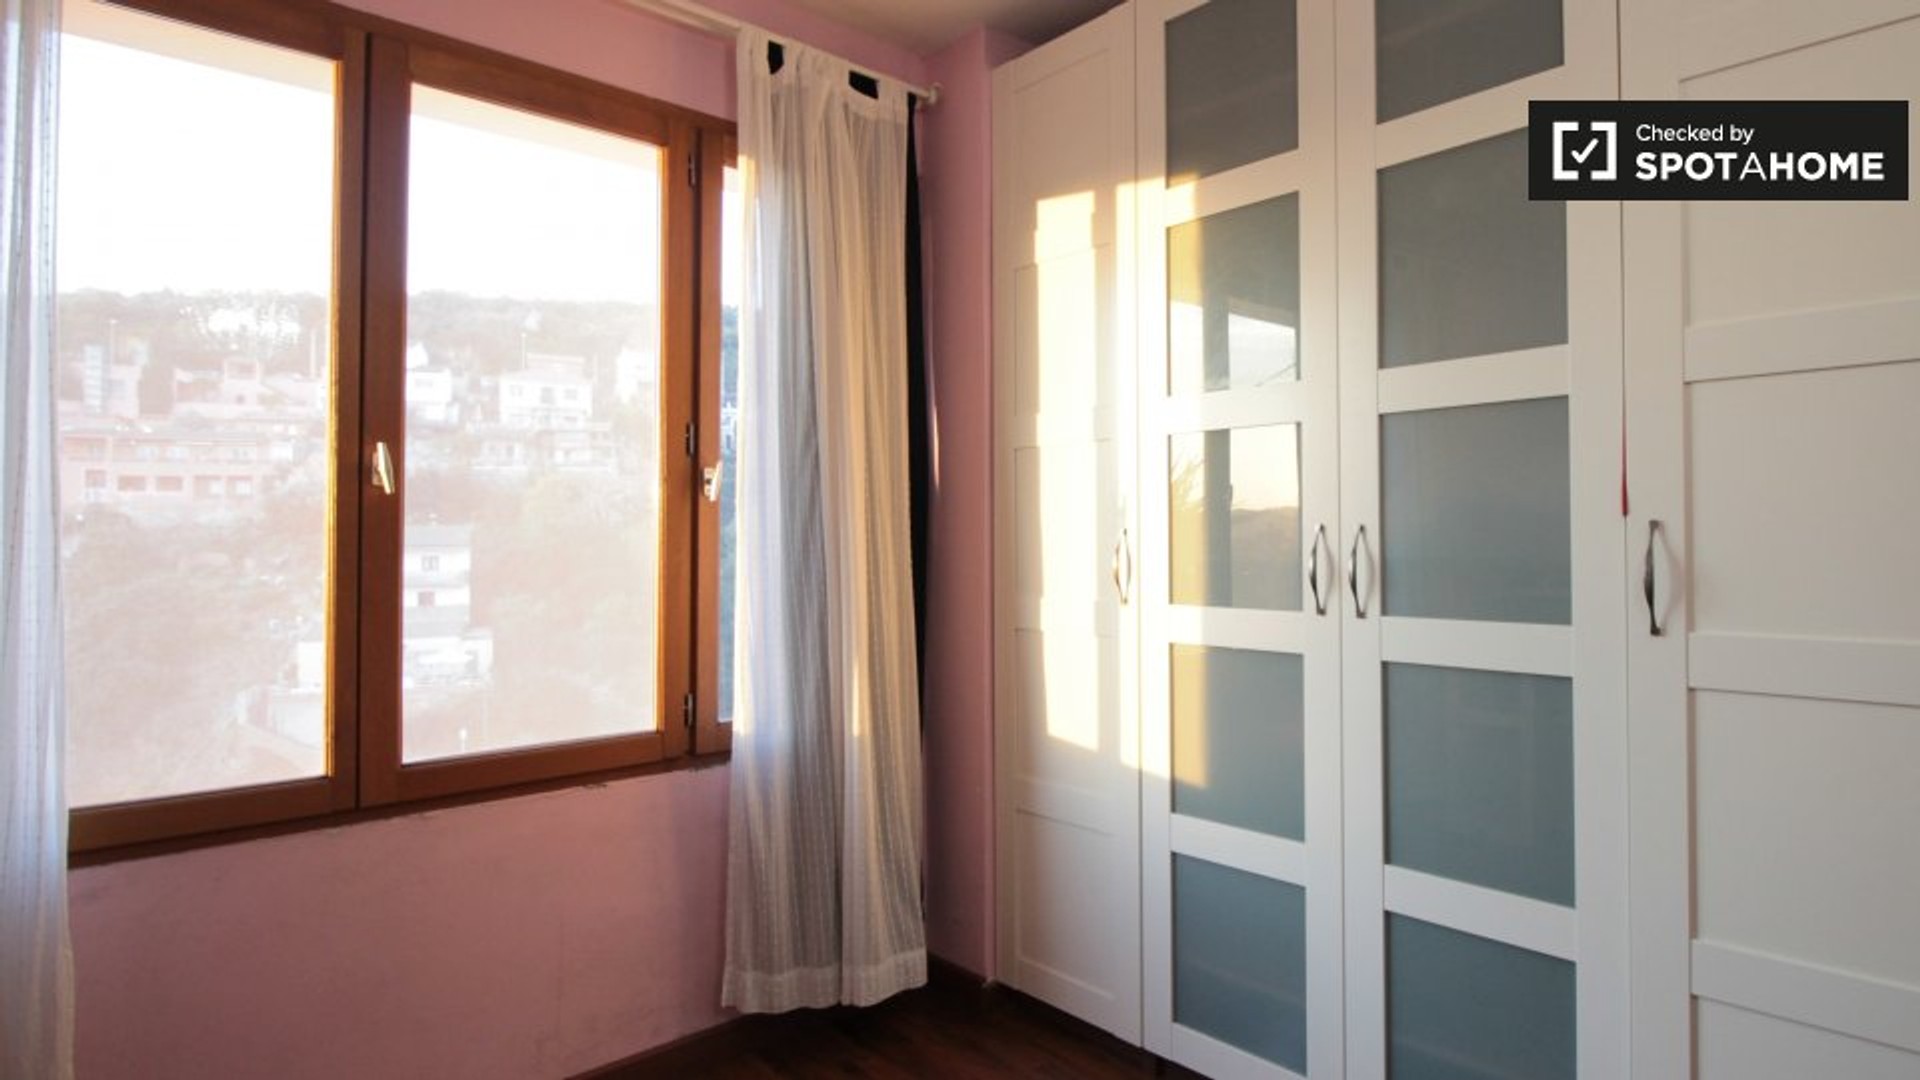 Pokój do wynajęcia we wspólnym mieszkaniu w Sant Cugat Del Vallès